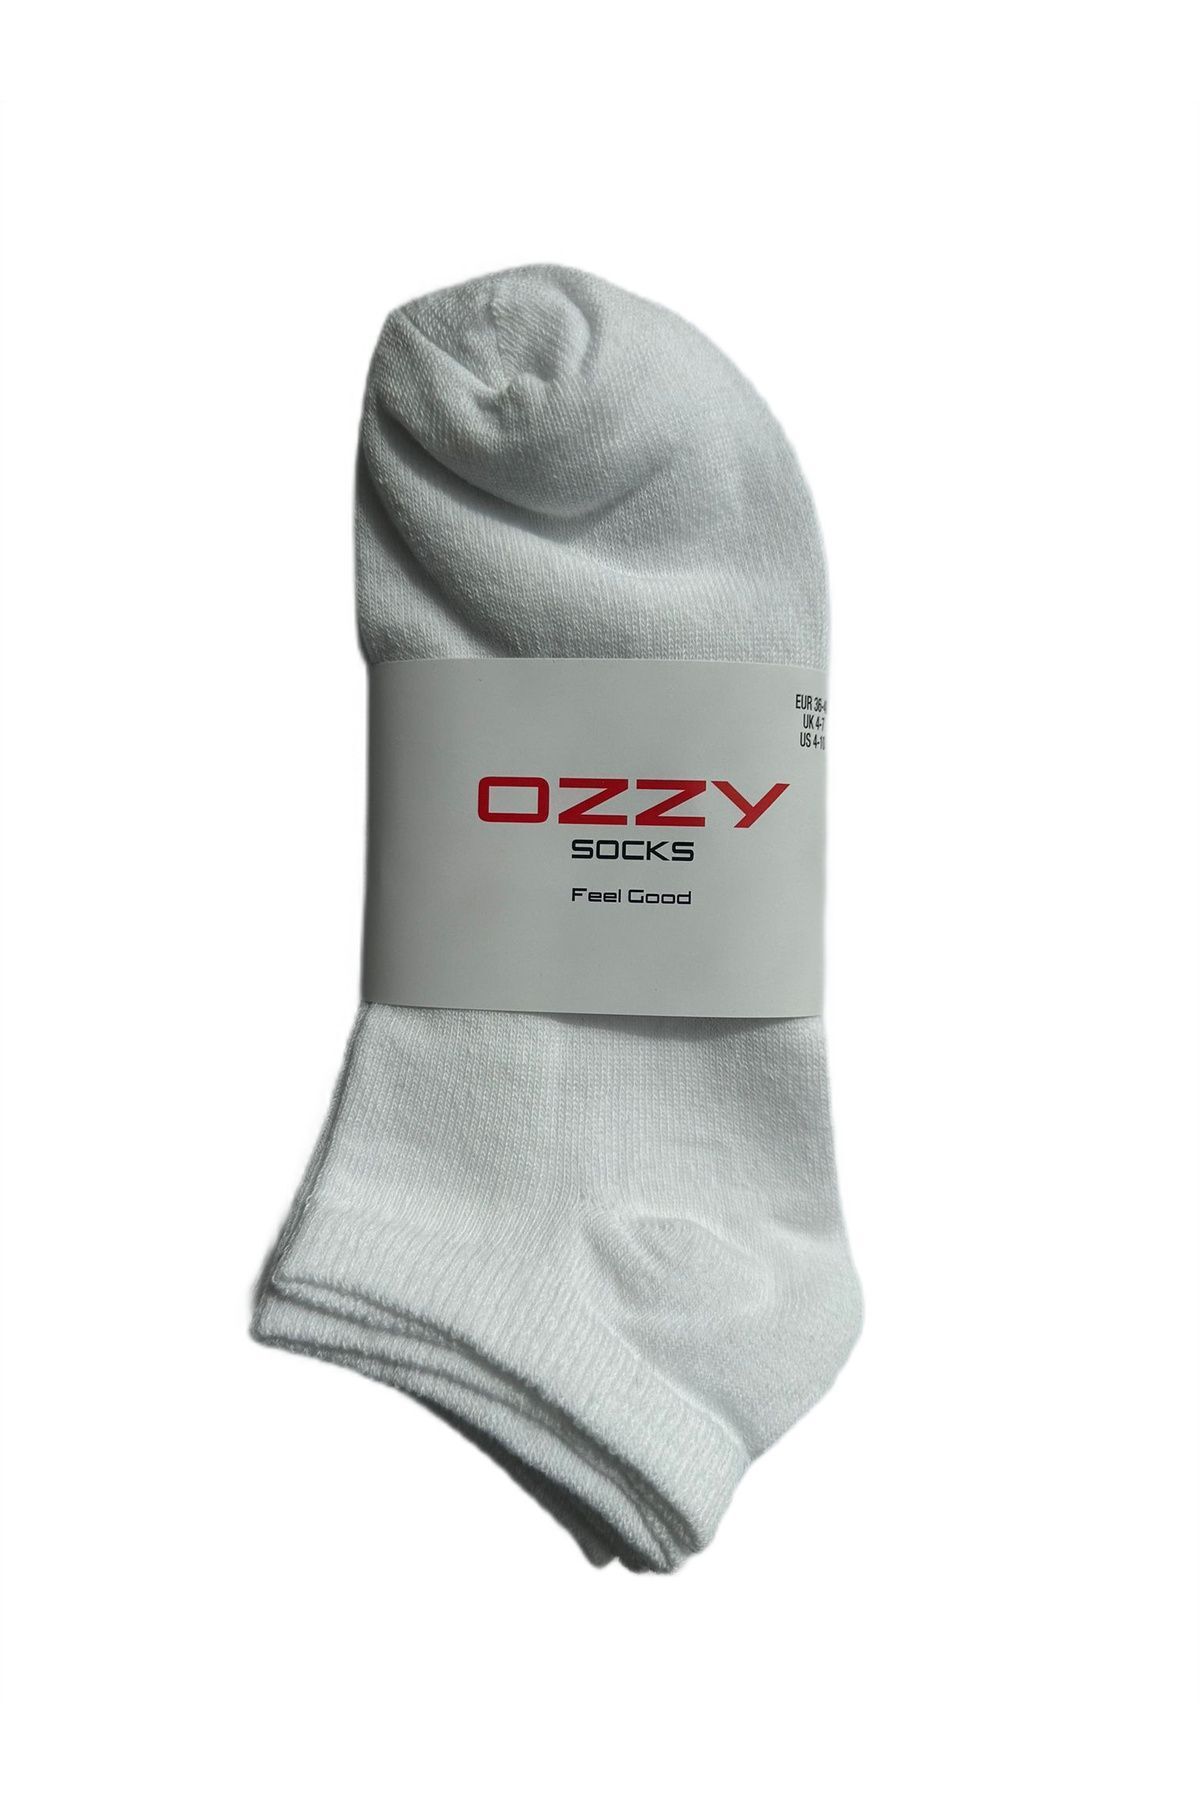 Ozzy Socks 8 Çift  Ekonomik  Pamuklu Beyaz Kadın Patik